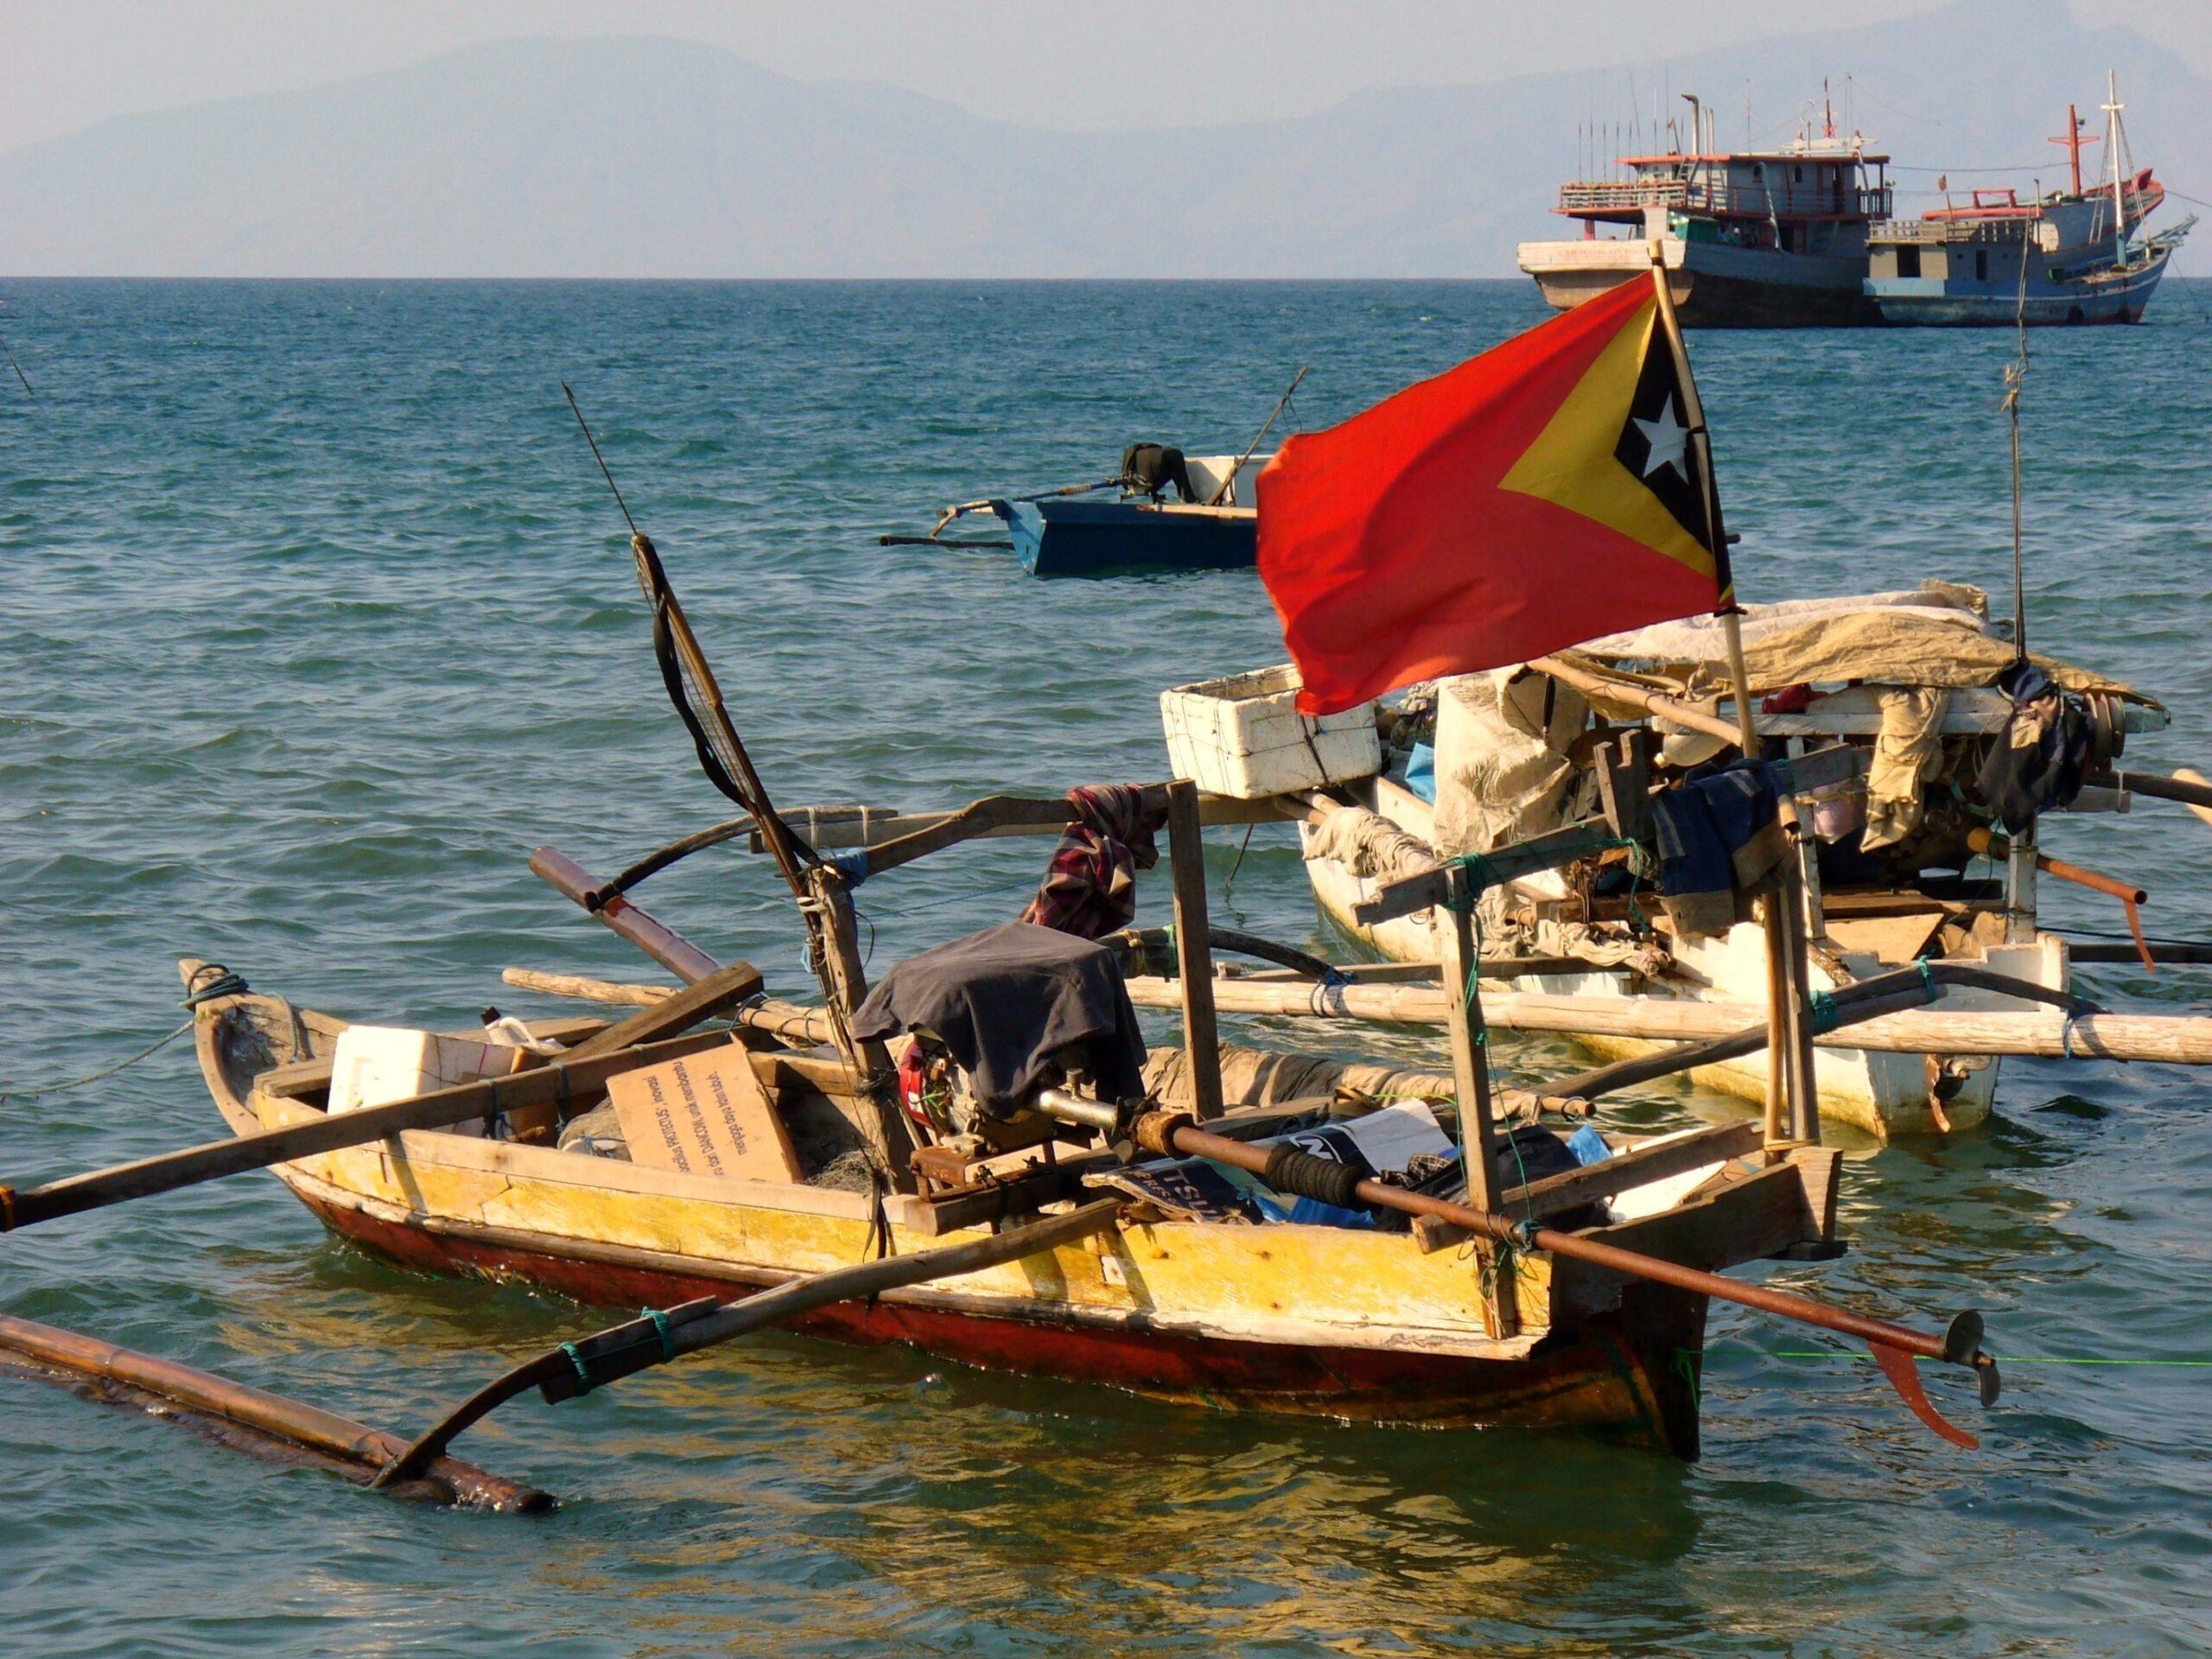 File:Dili, East Timor